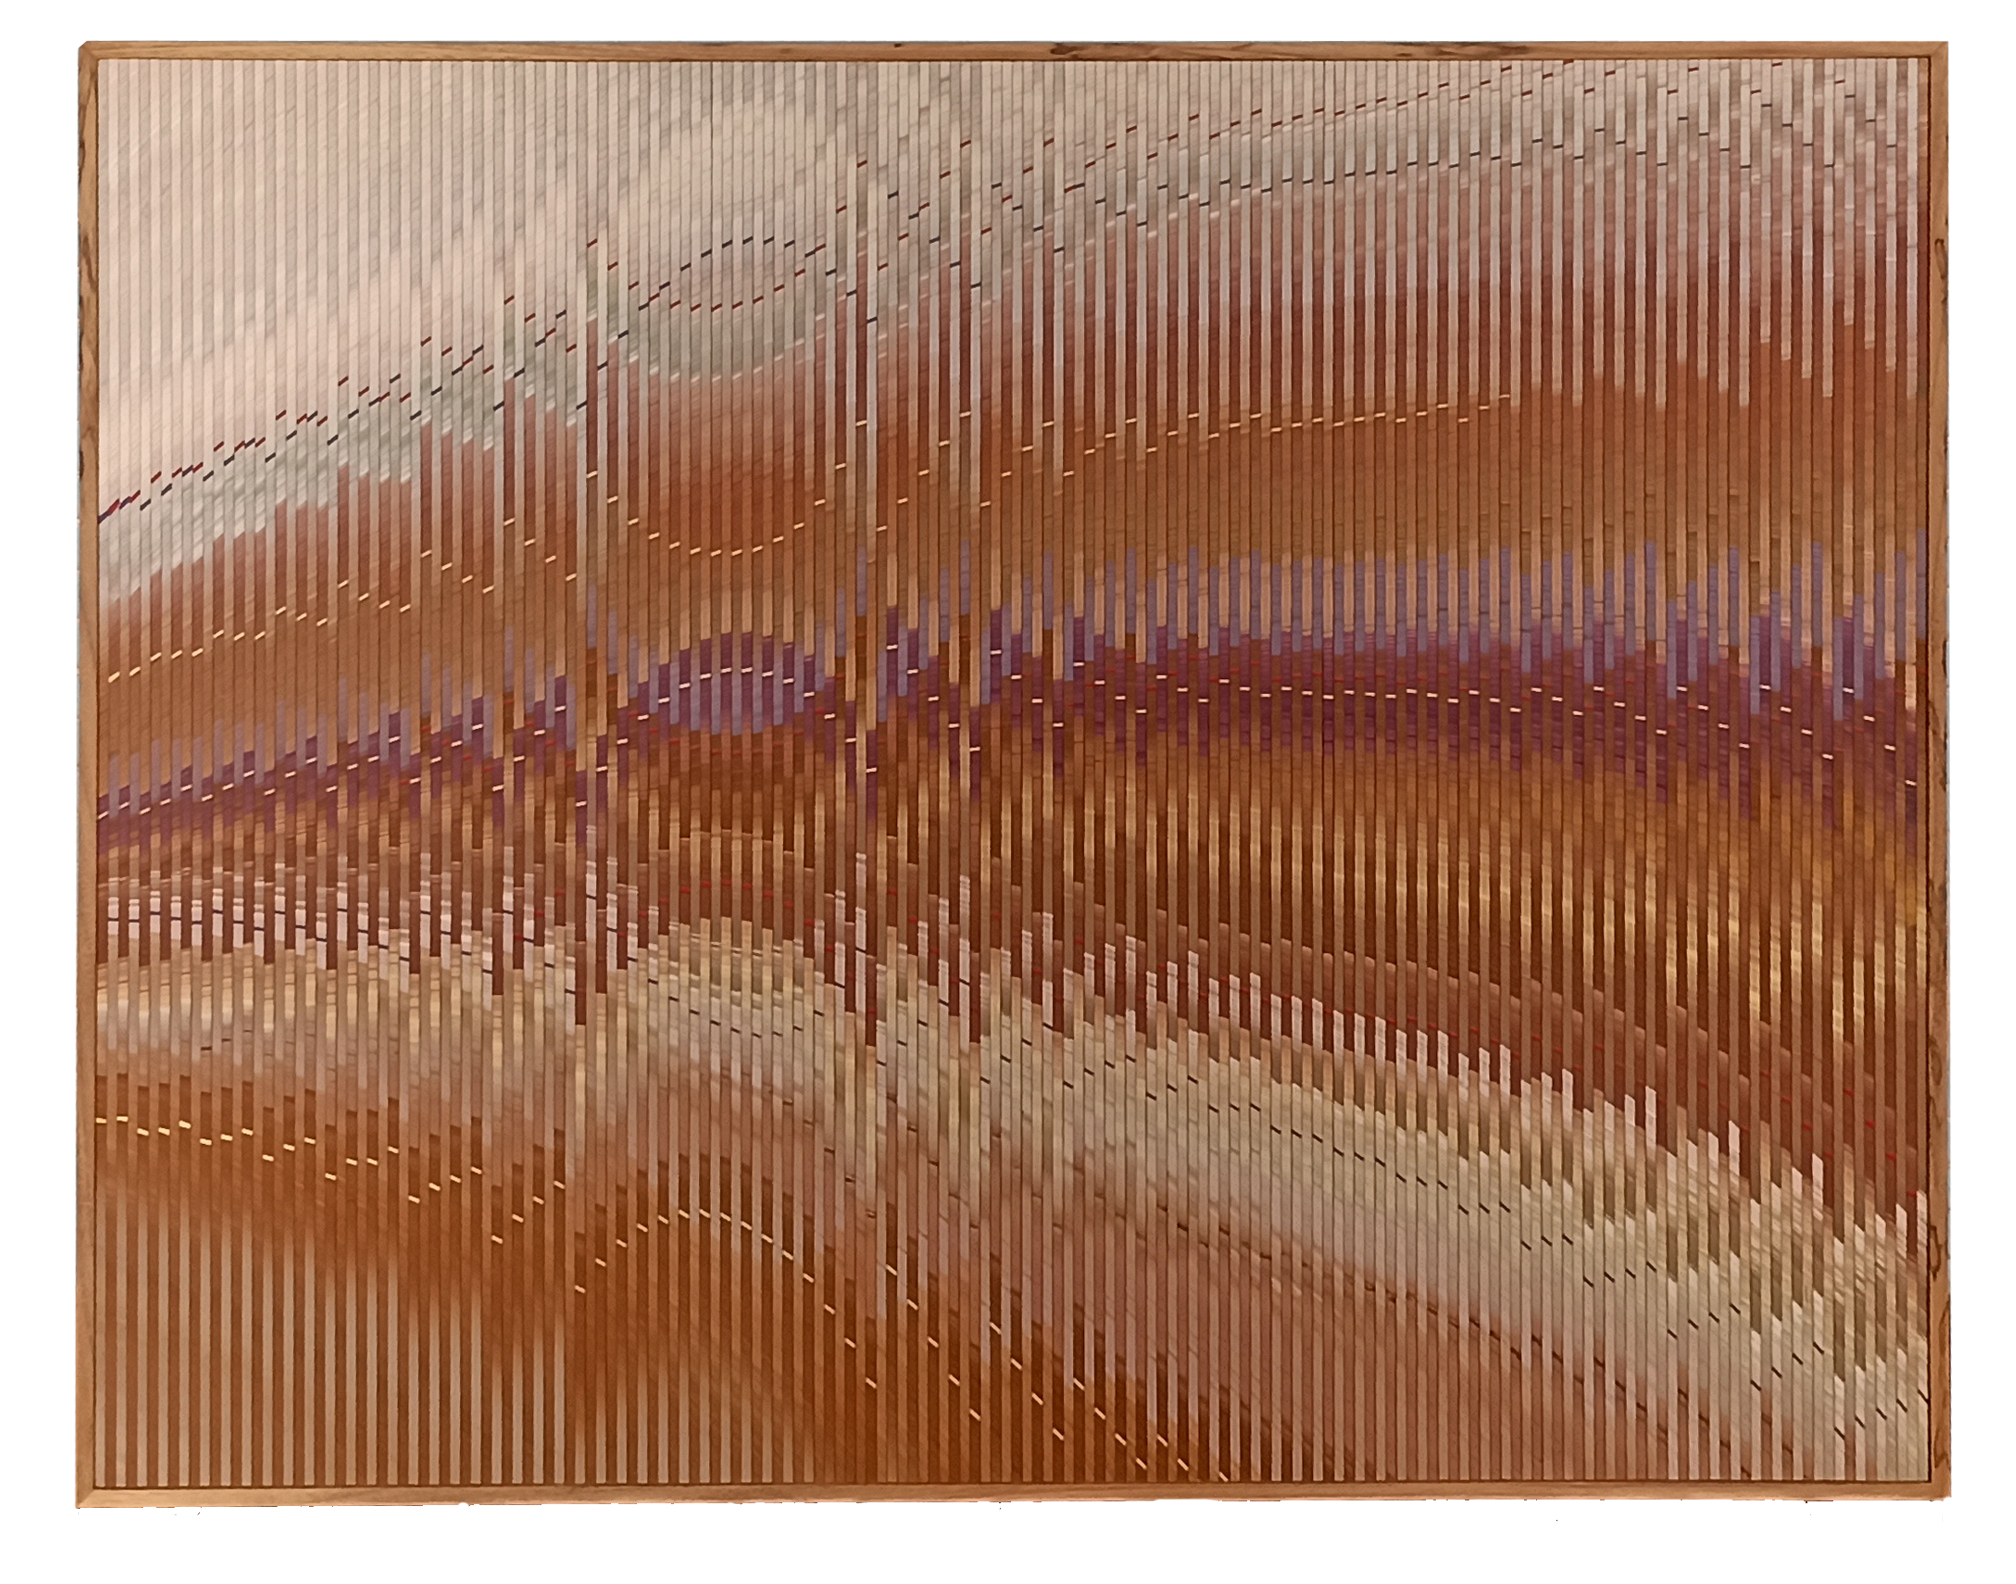 Abraham Palatnik, W-950, acrílica sobre madeira, 70 x 80 cm, 2016